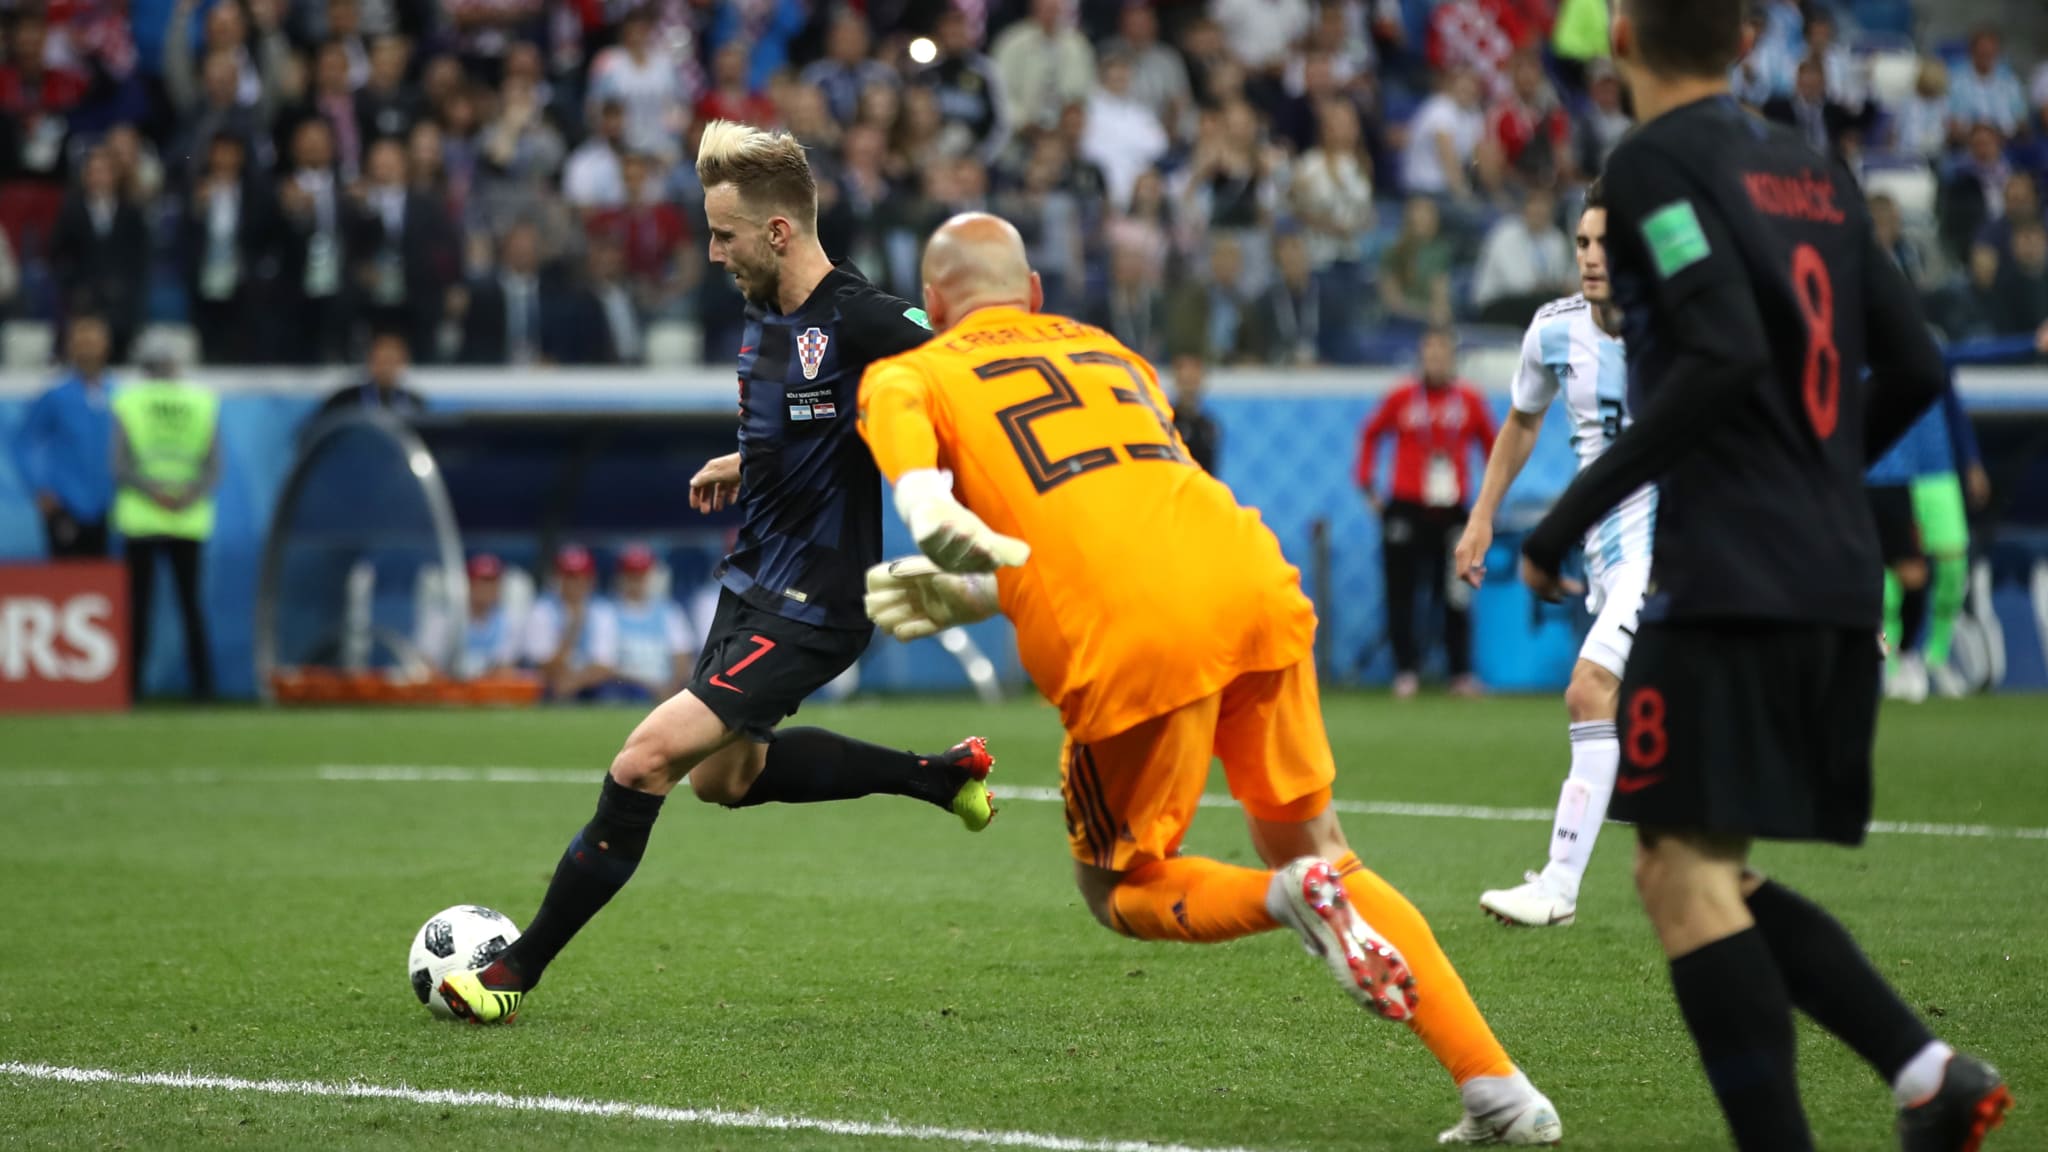 GOL KETIGA. Ivan Rakitic (Kroasia) mencetak gol ketiga melewati kiper Argentina Wilfredo Caballero di pertandingan grup D, Jumat, 22 Juni. Foto dari FIFA.com 